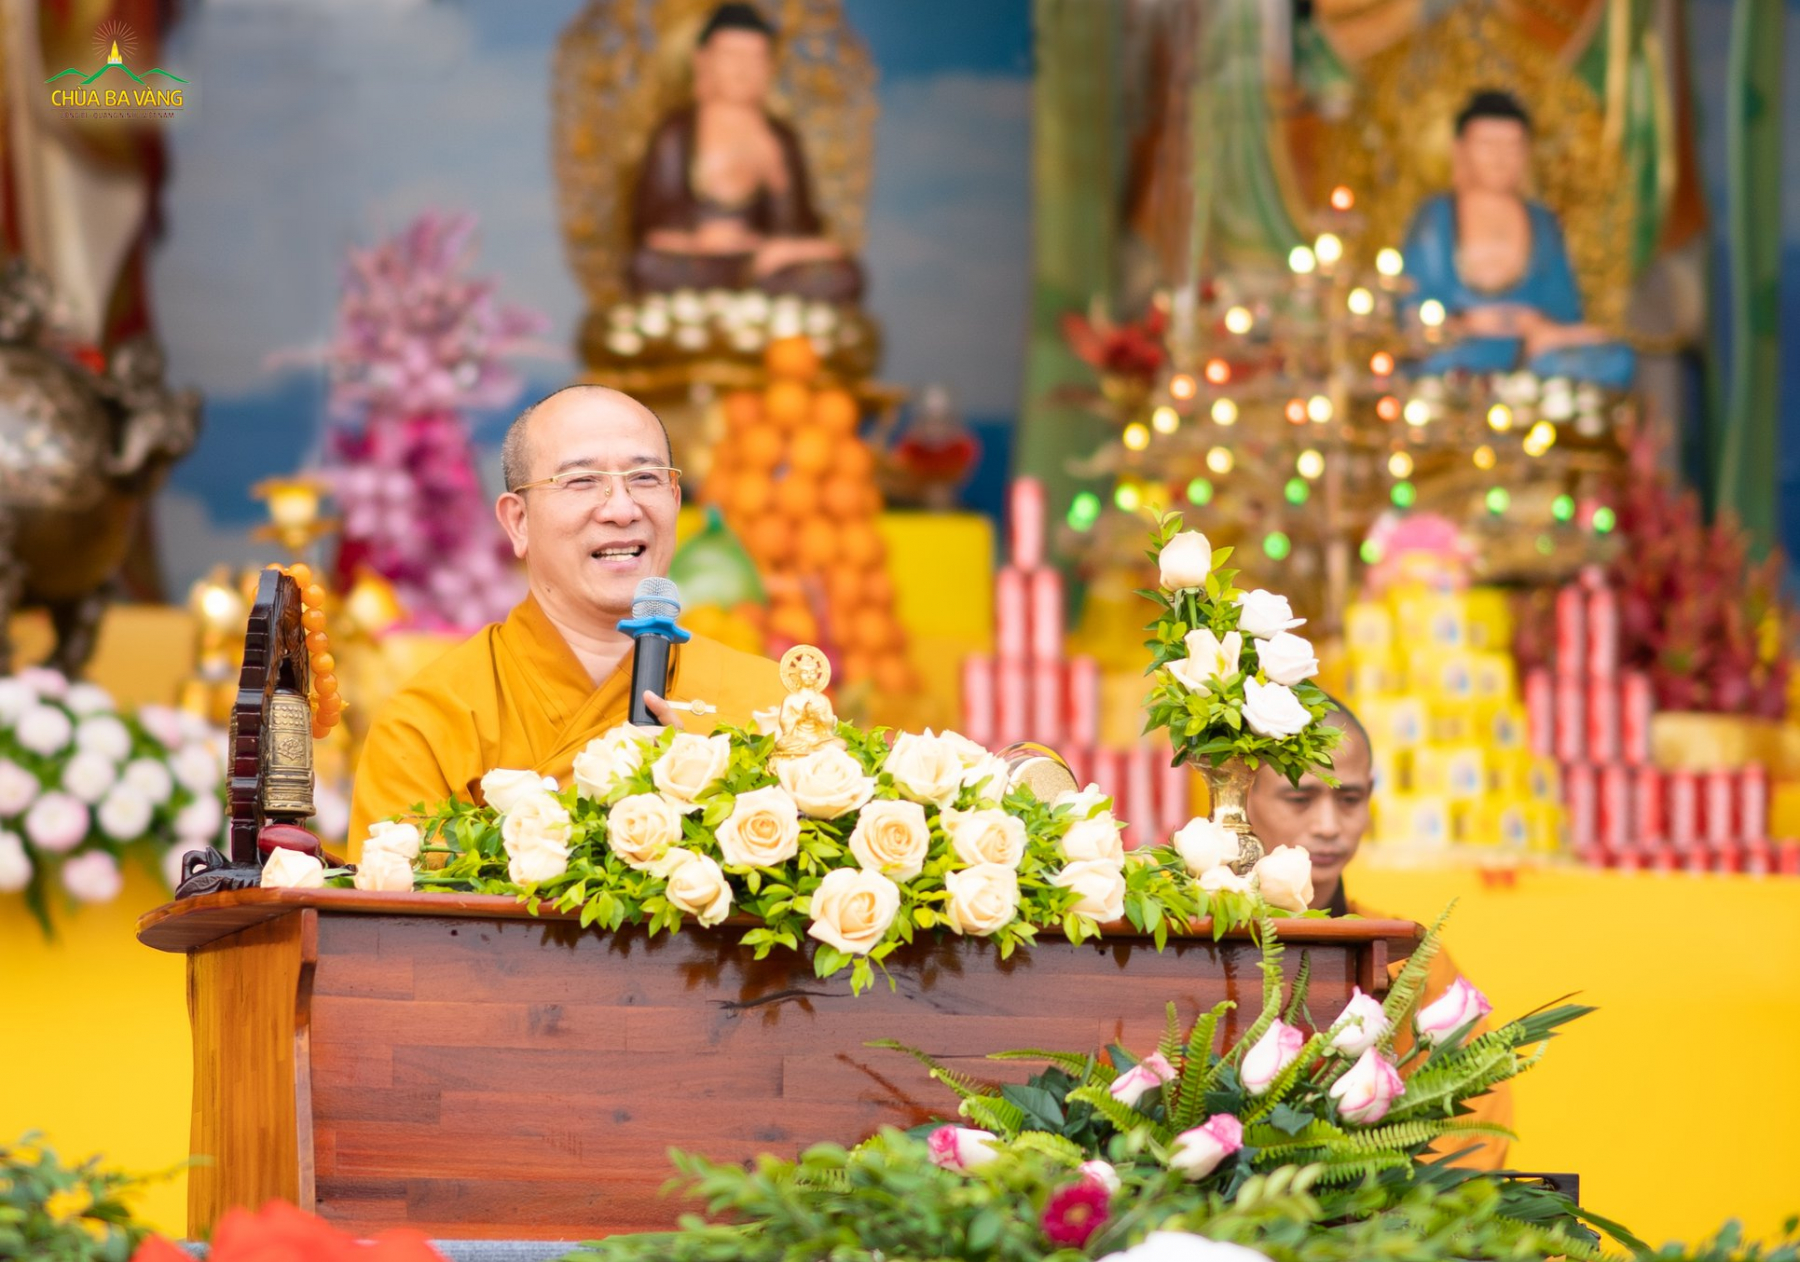 Với lời cầu thỉnh của các Phật tử, Sư Phụ đã từ bi giảng giải cho đại chúng Pháp thoại: “Ai giữ gìn tài sản cho ta tốt nhất?”